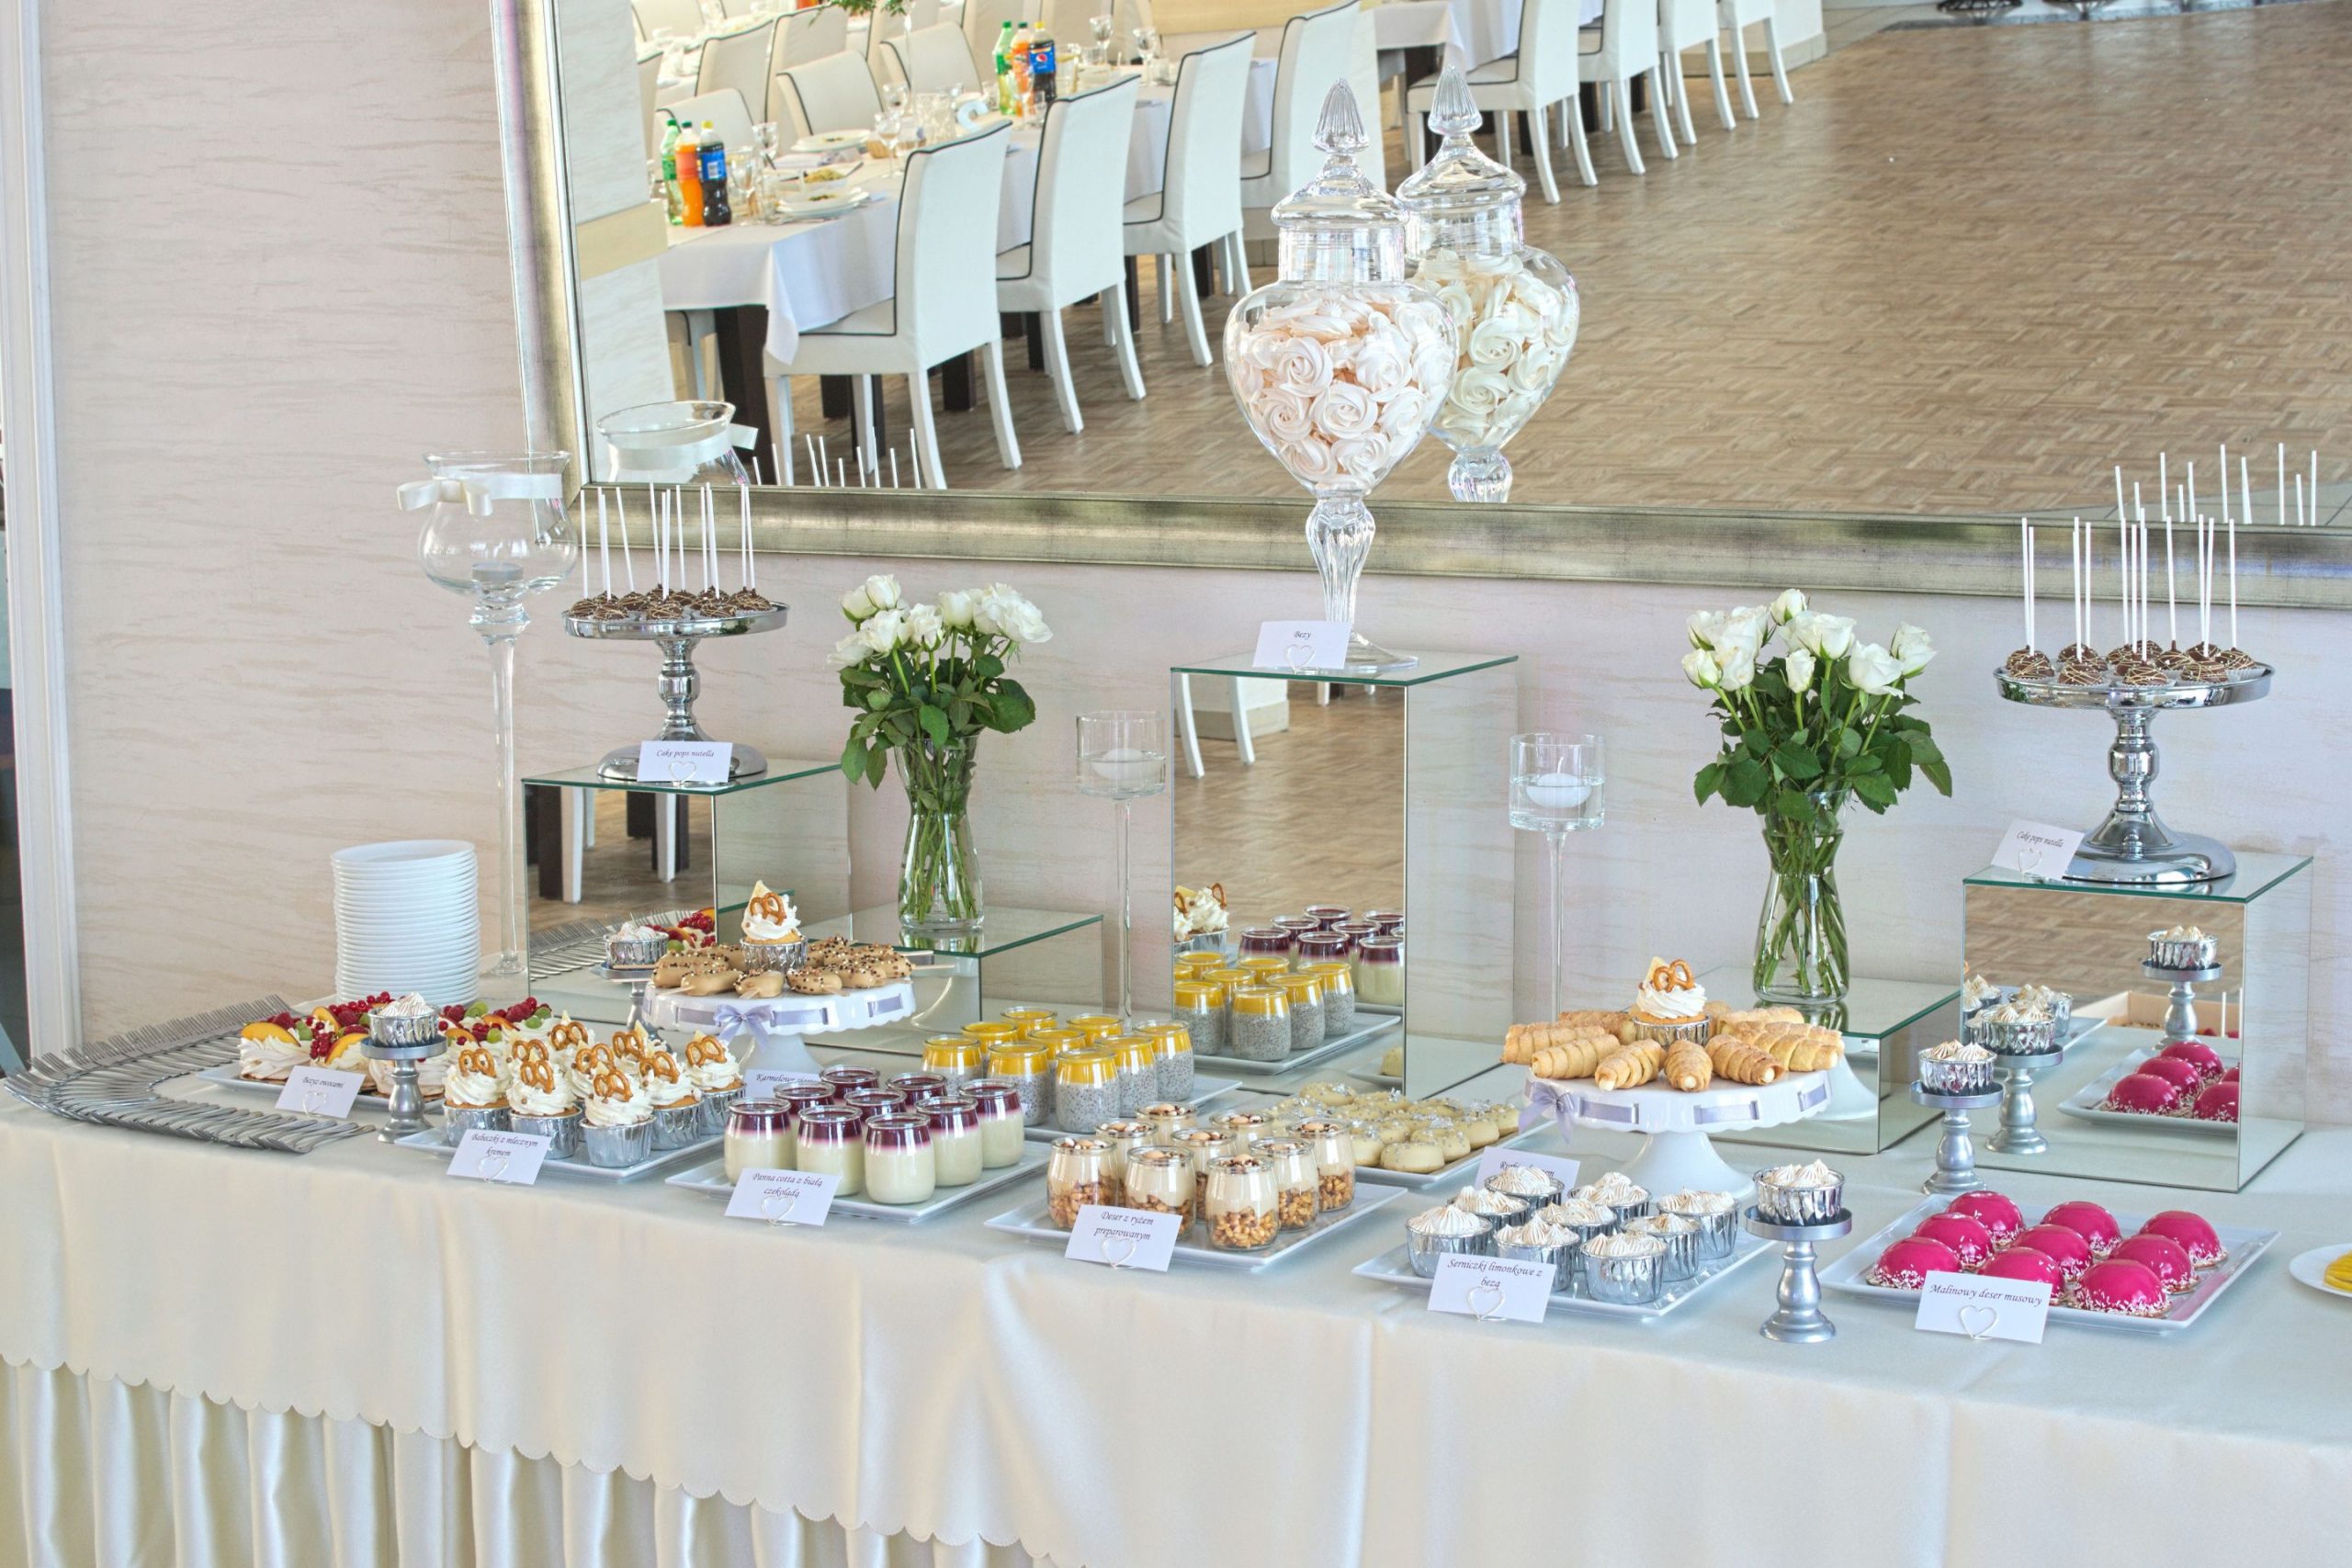 Słodki stół przygotowany na wesele Patrycji i Filipa